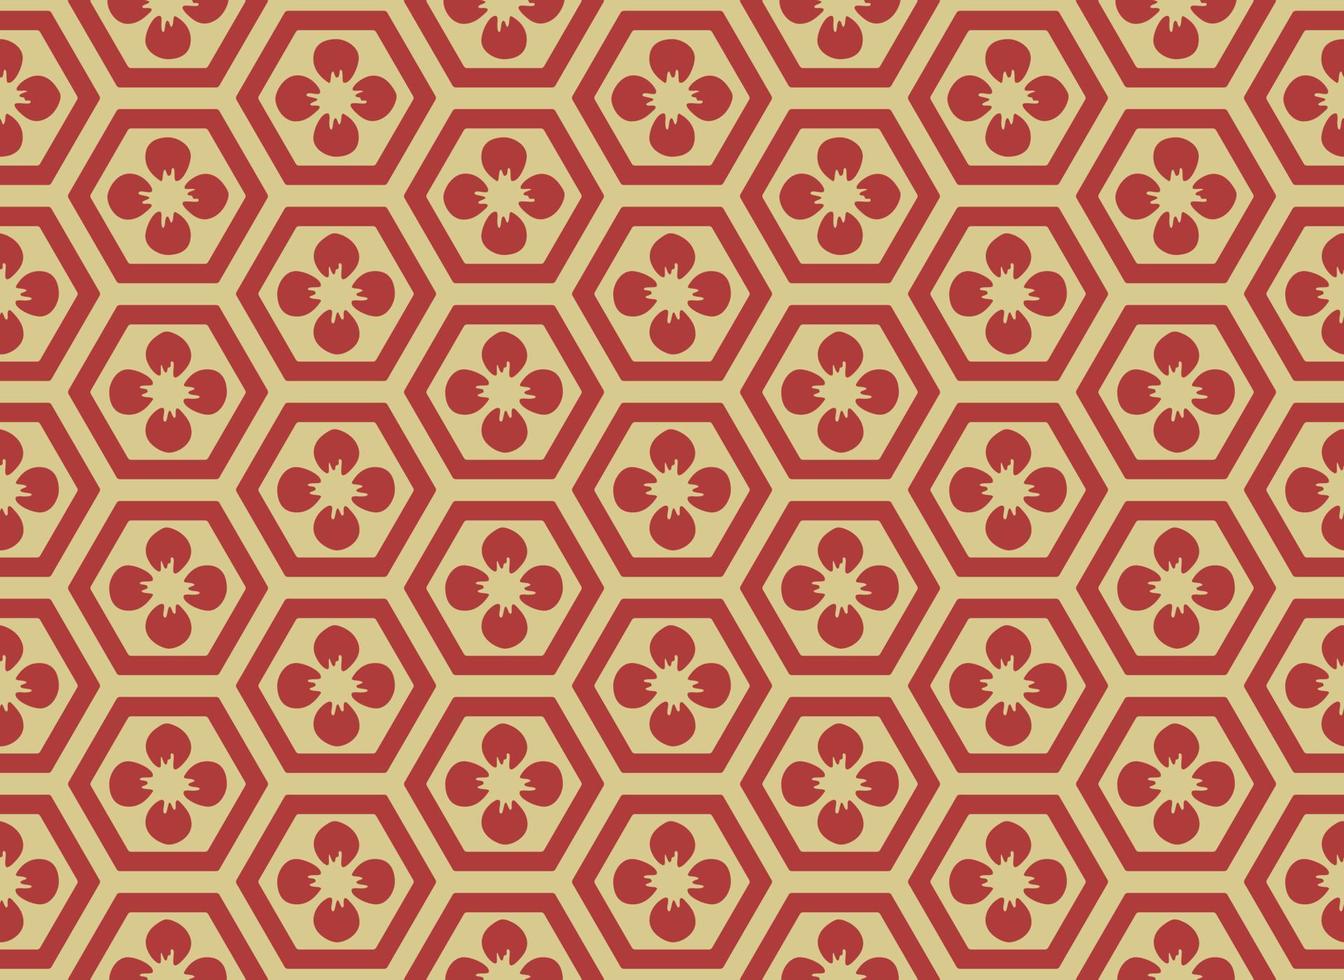 traditionelles asiatisches Hexagonmuster, nahtloses Fliesenvektordesign. Retro-inspiriertes orientalisches Design mit roten und goldenen Farben vektor